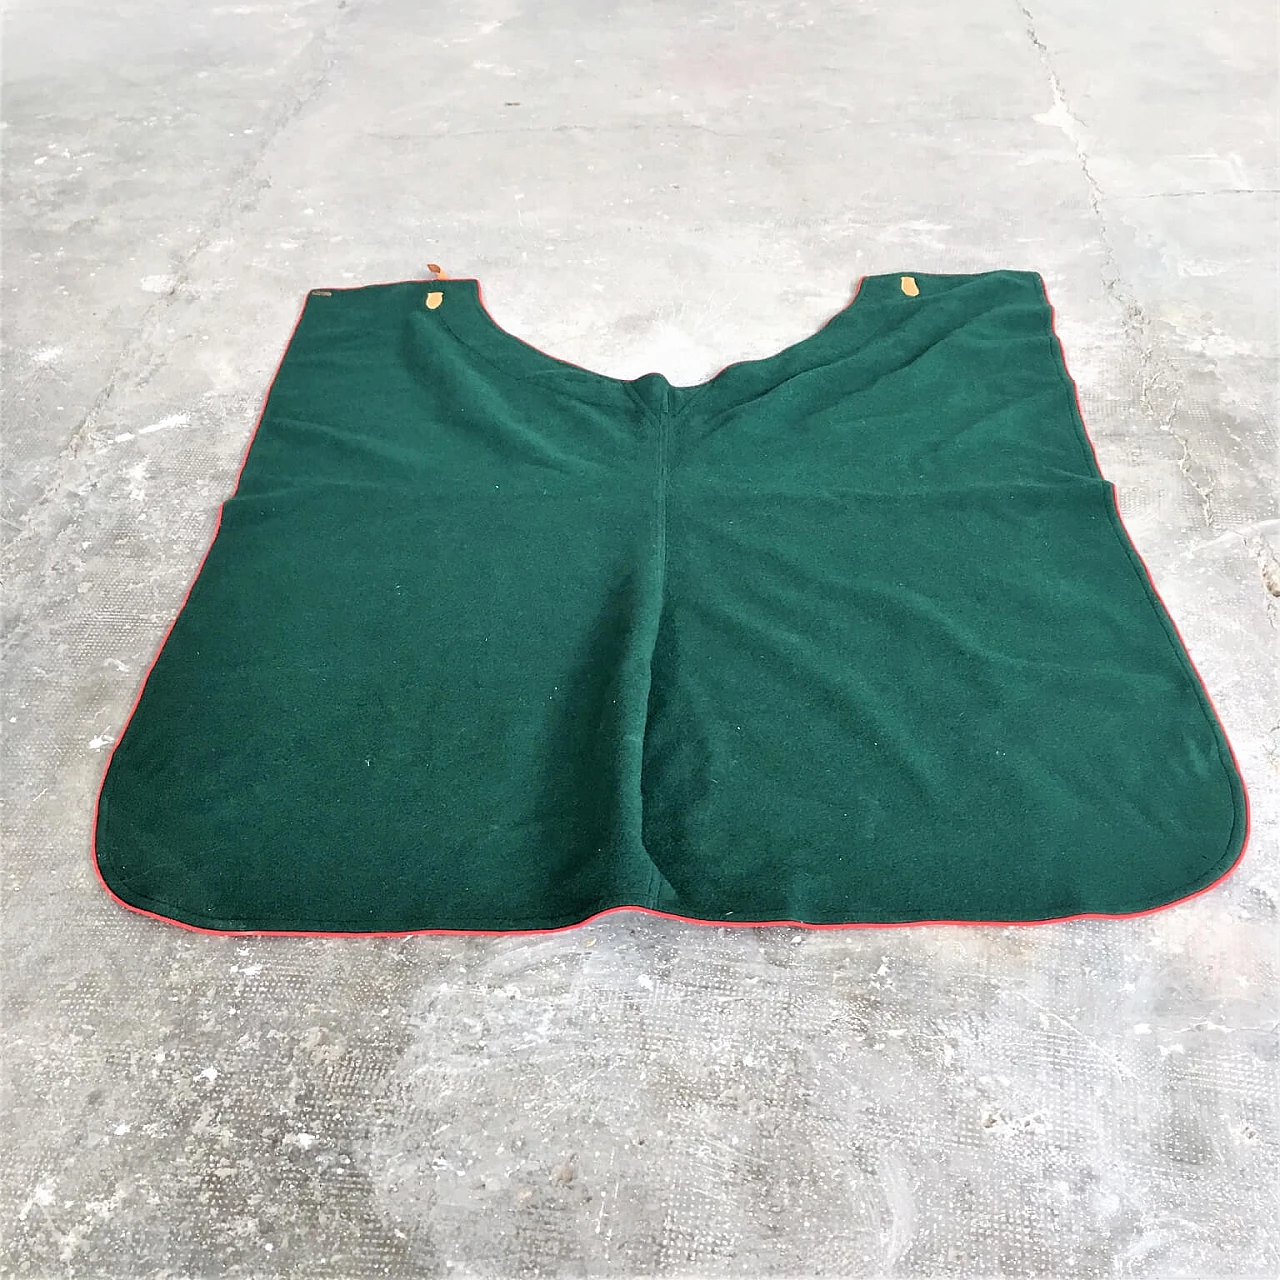 Coperta verde Selleria Pariani, realizzata a mano, pura lana vergine, profili rossi e cuoio, 1980 1071705